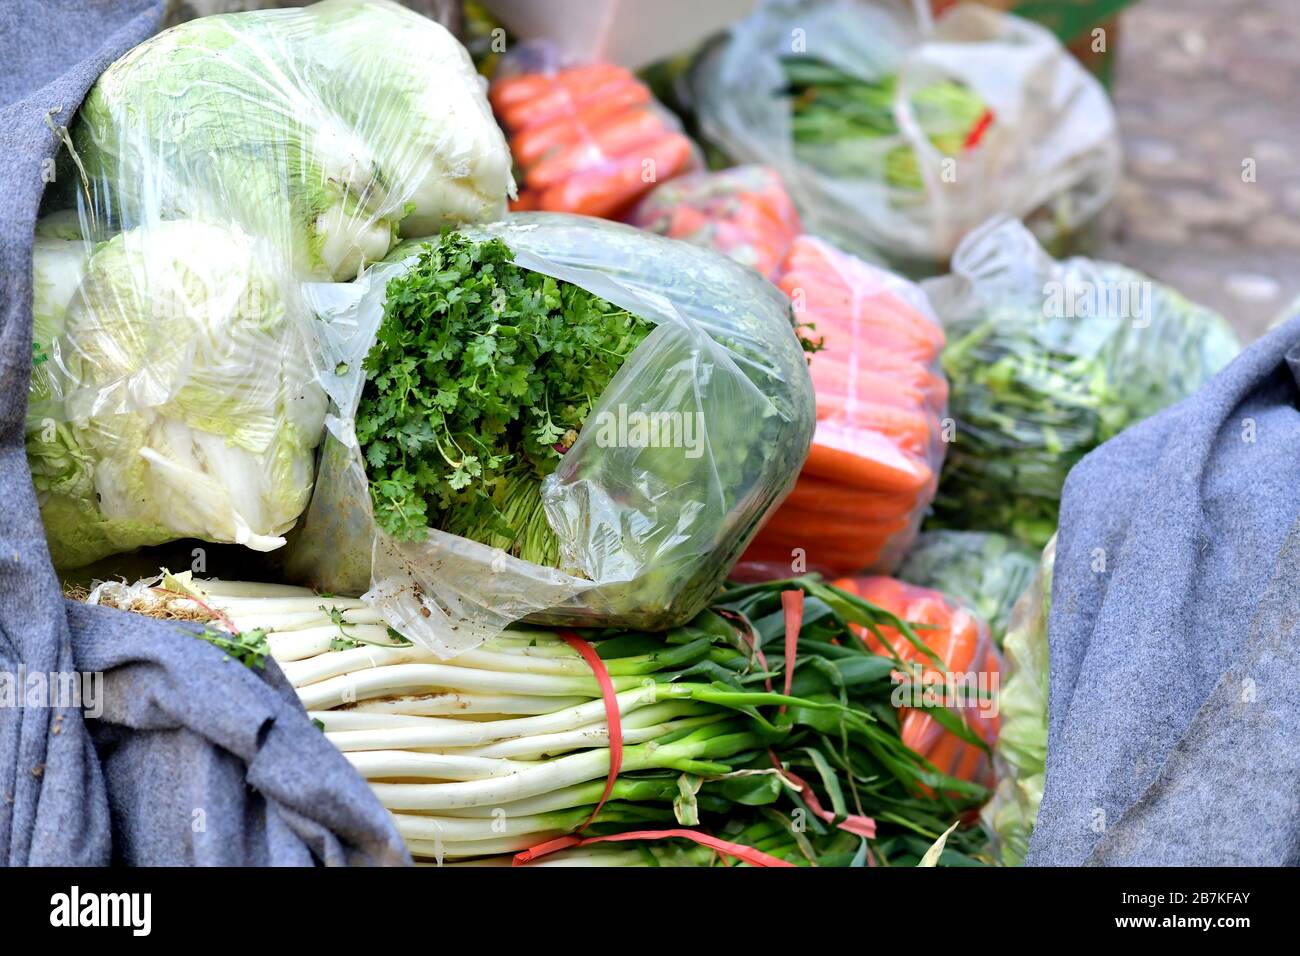 Sacchetti di verdure sono messi a terra al di fuori di un mini-market comunitario nella città di Luoyang, provincia di Henan della Cina centrale, 4 febbraio 2020. Foto Stock